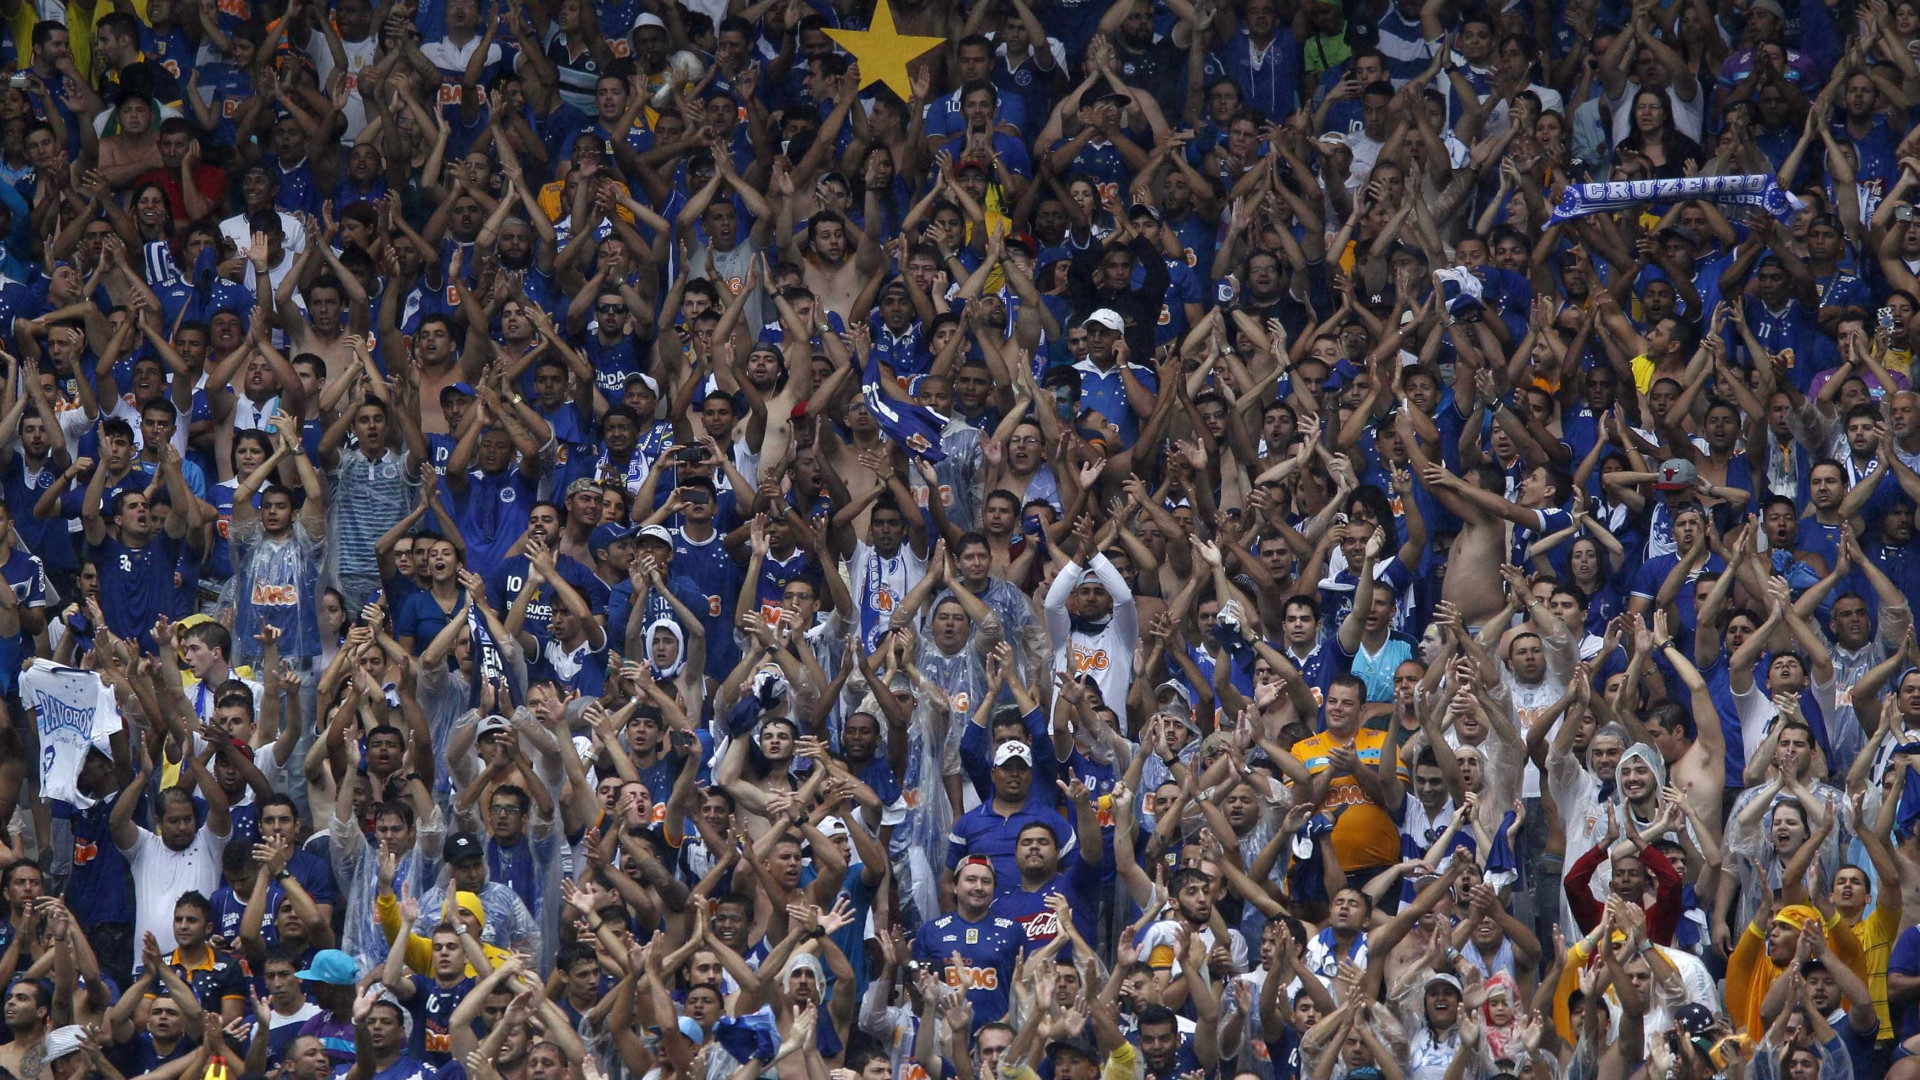 MP deve analisar final com duas torcidas, diz Cruzeiro após reunião